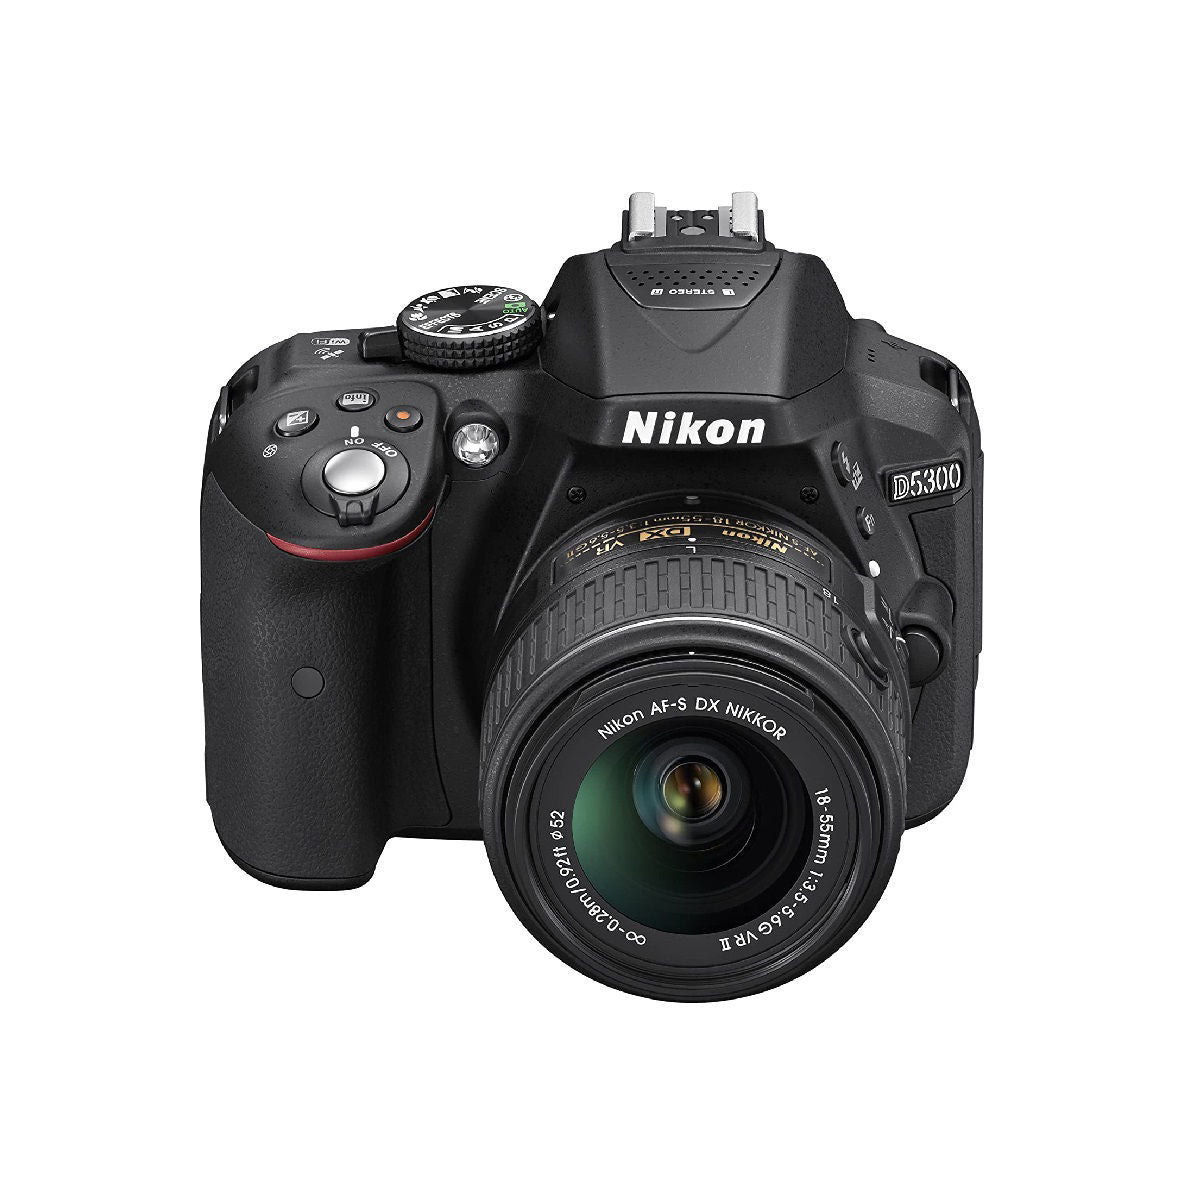 Nikon Digital Camera D5300 Black Kit with AF S DX 18 55 3.5-5.6 G ...